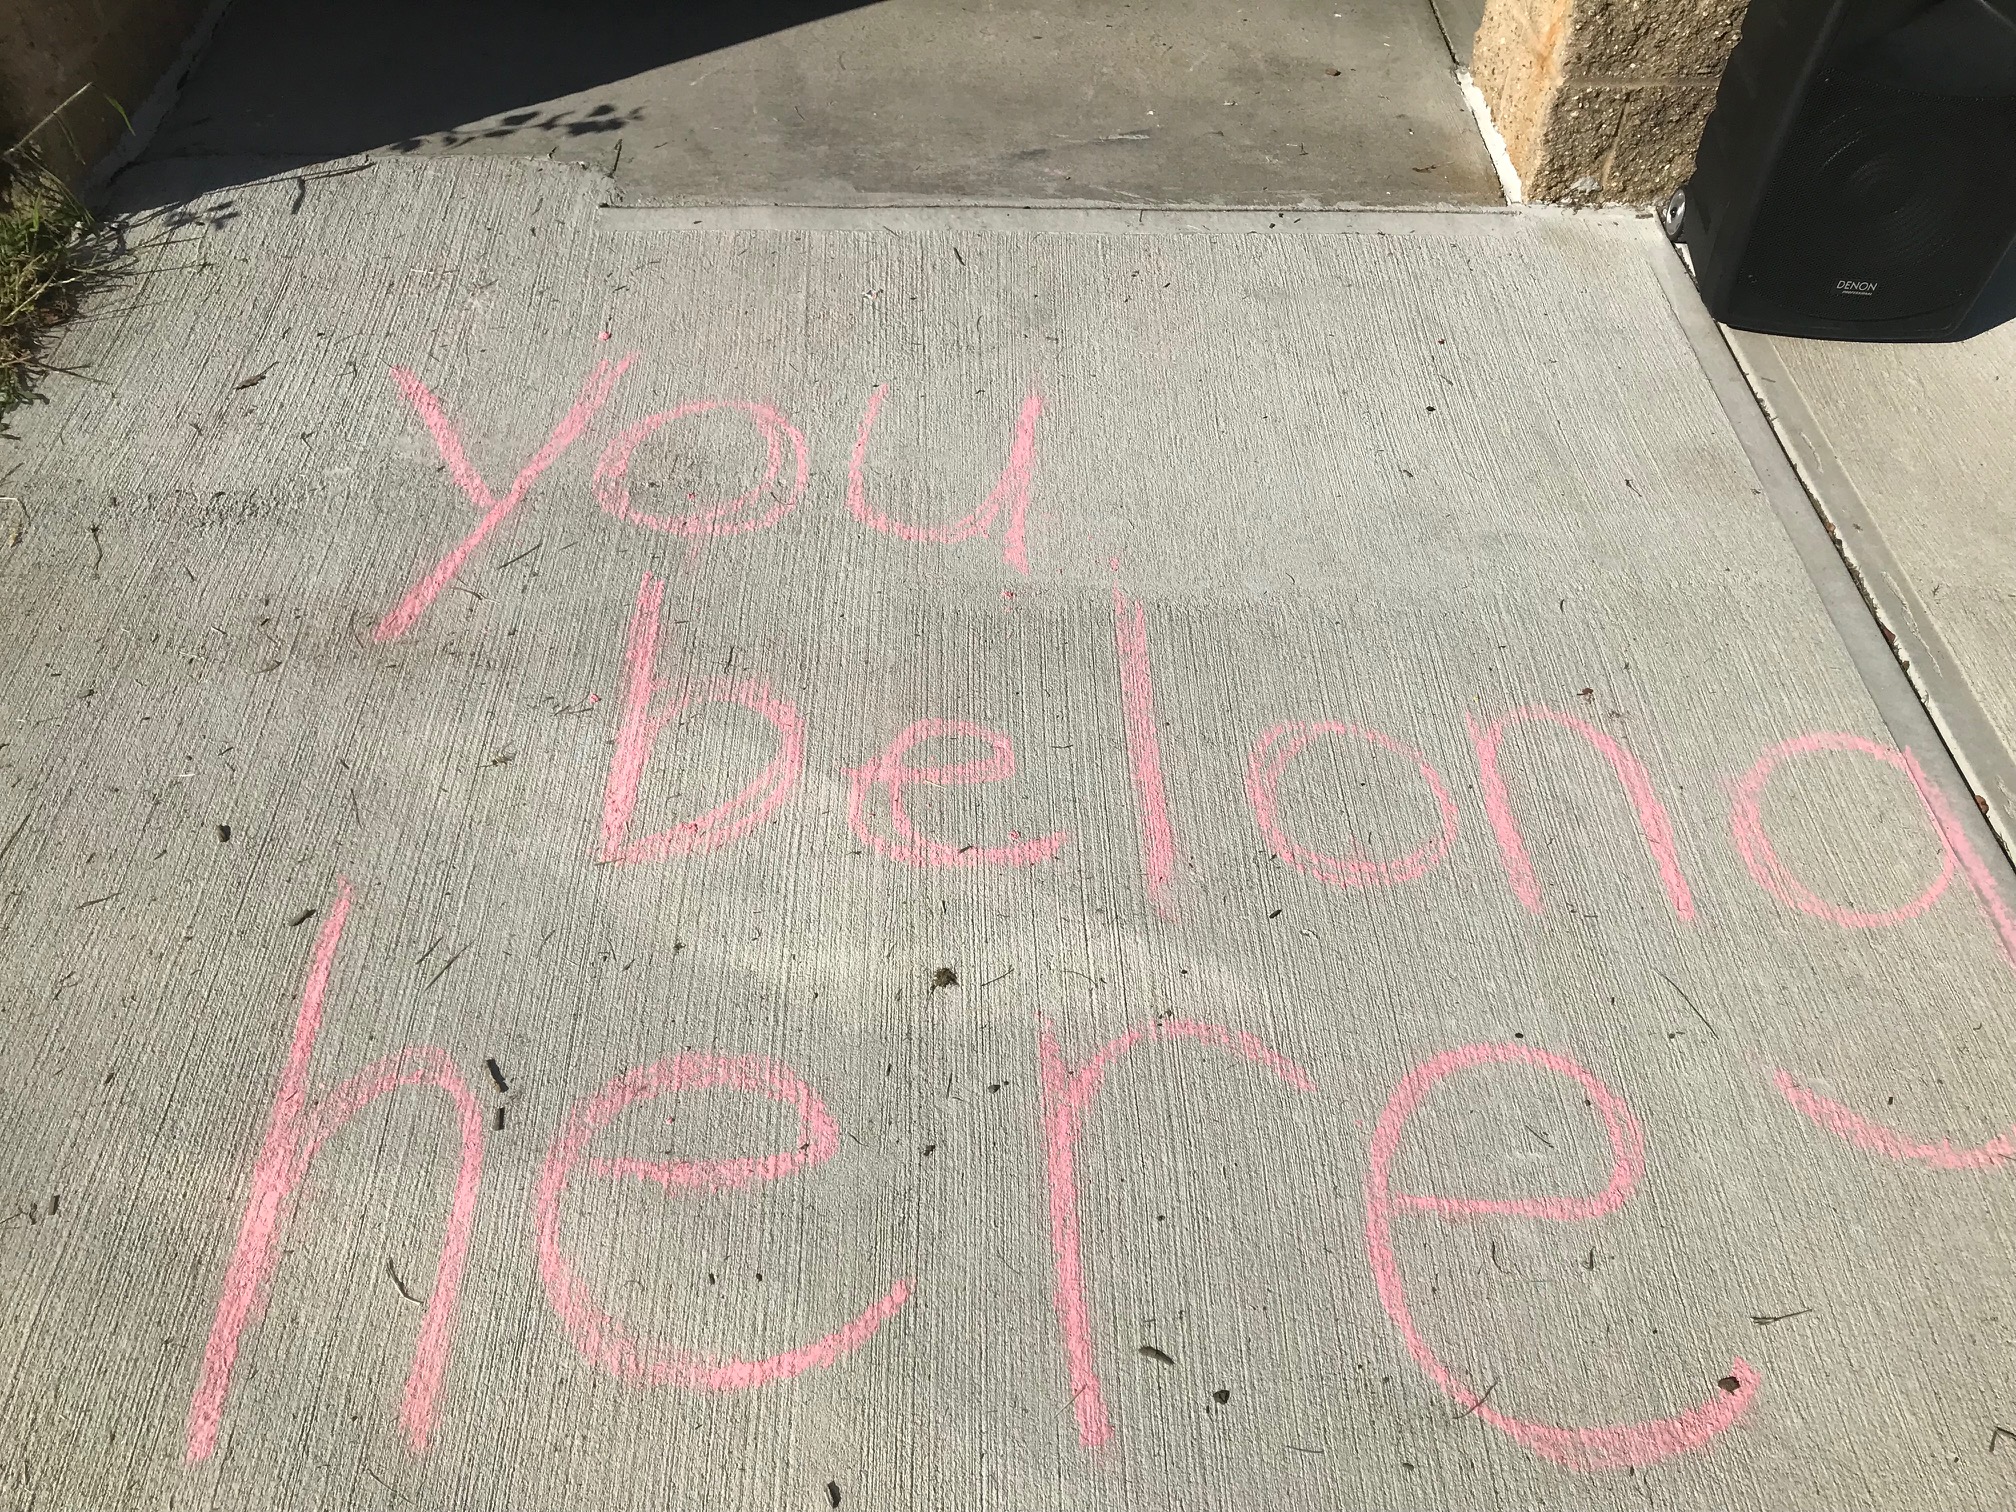 Sidewalk Message